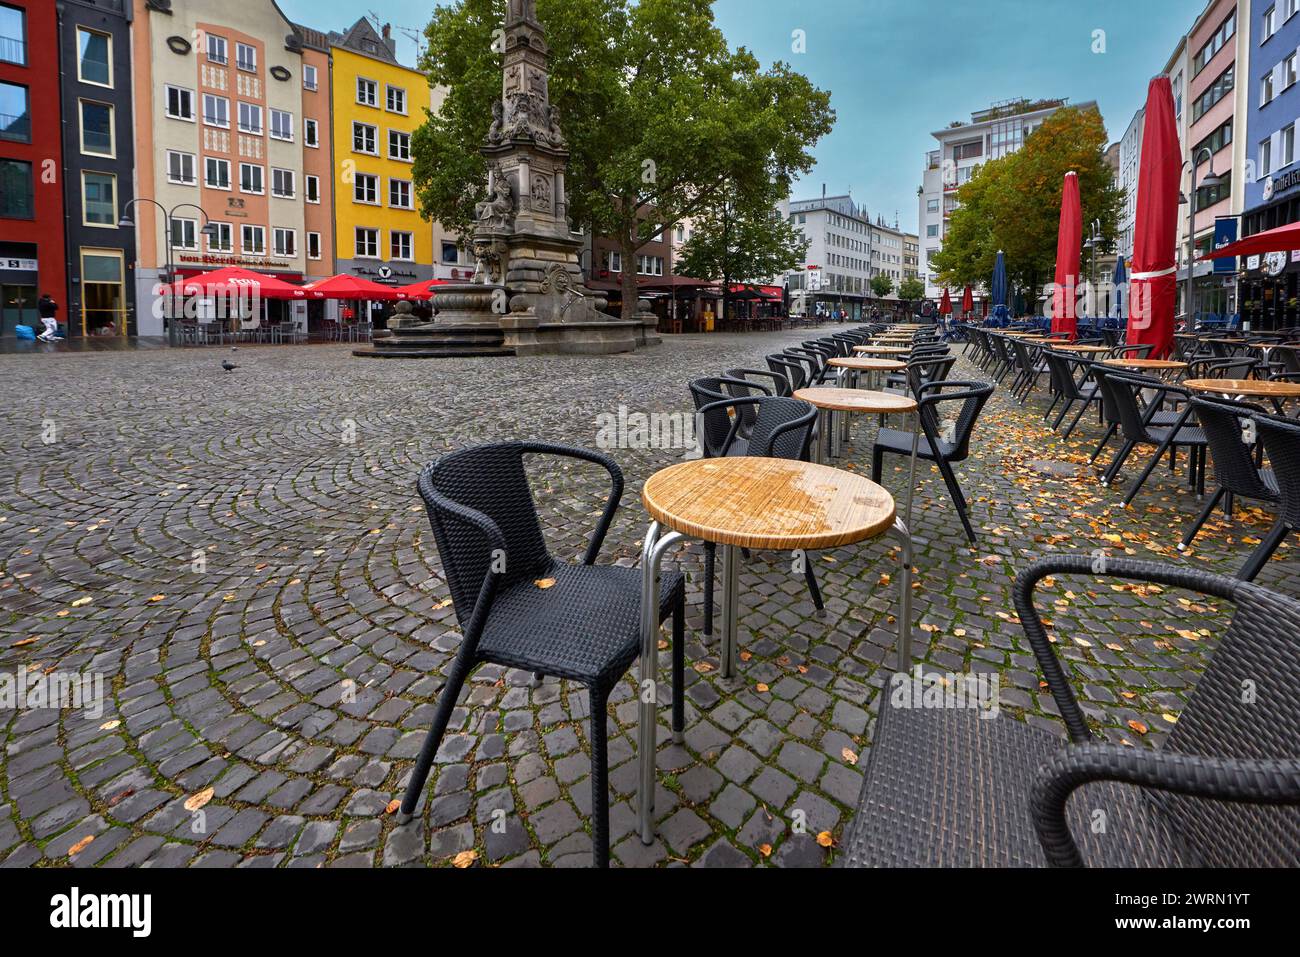 Café de la calle en el centro de Colonia, Alemania Foto de stock